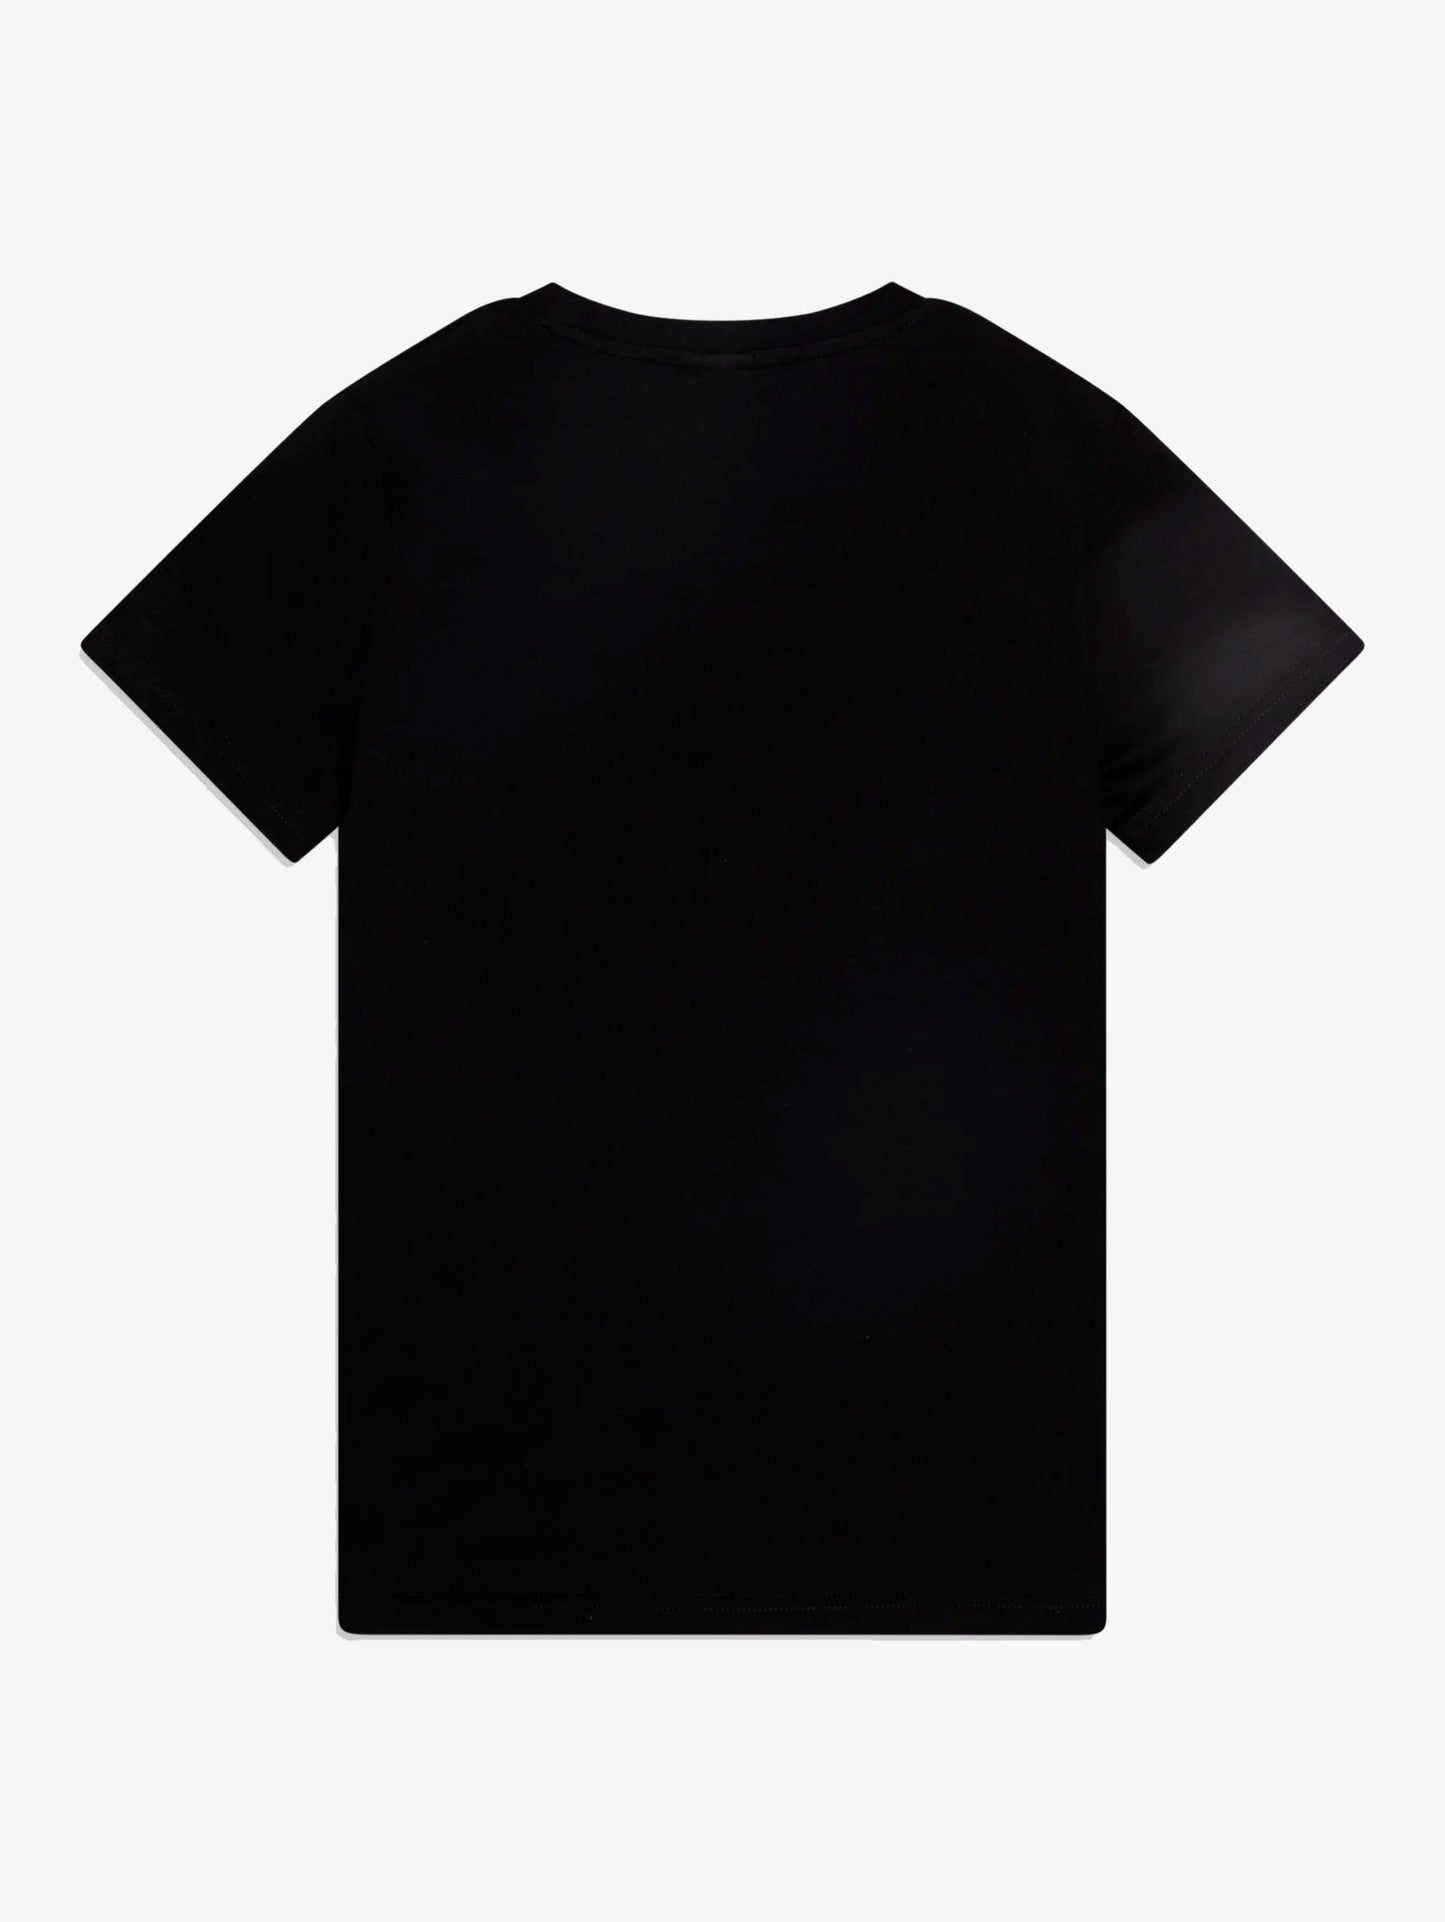 Classic Dot Chest Tee t-shirt black